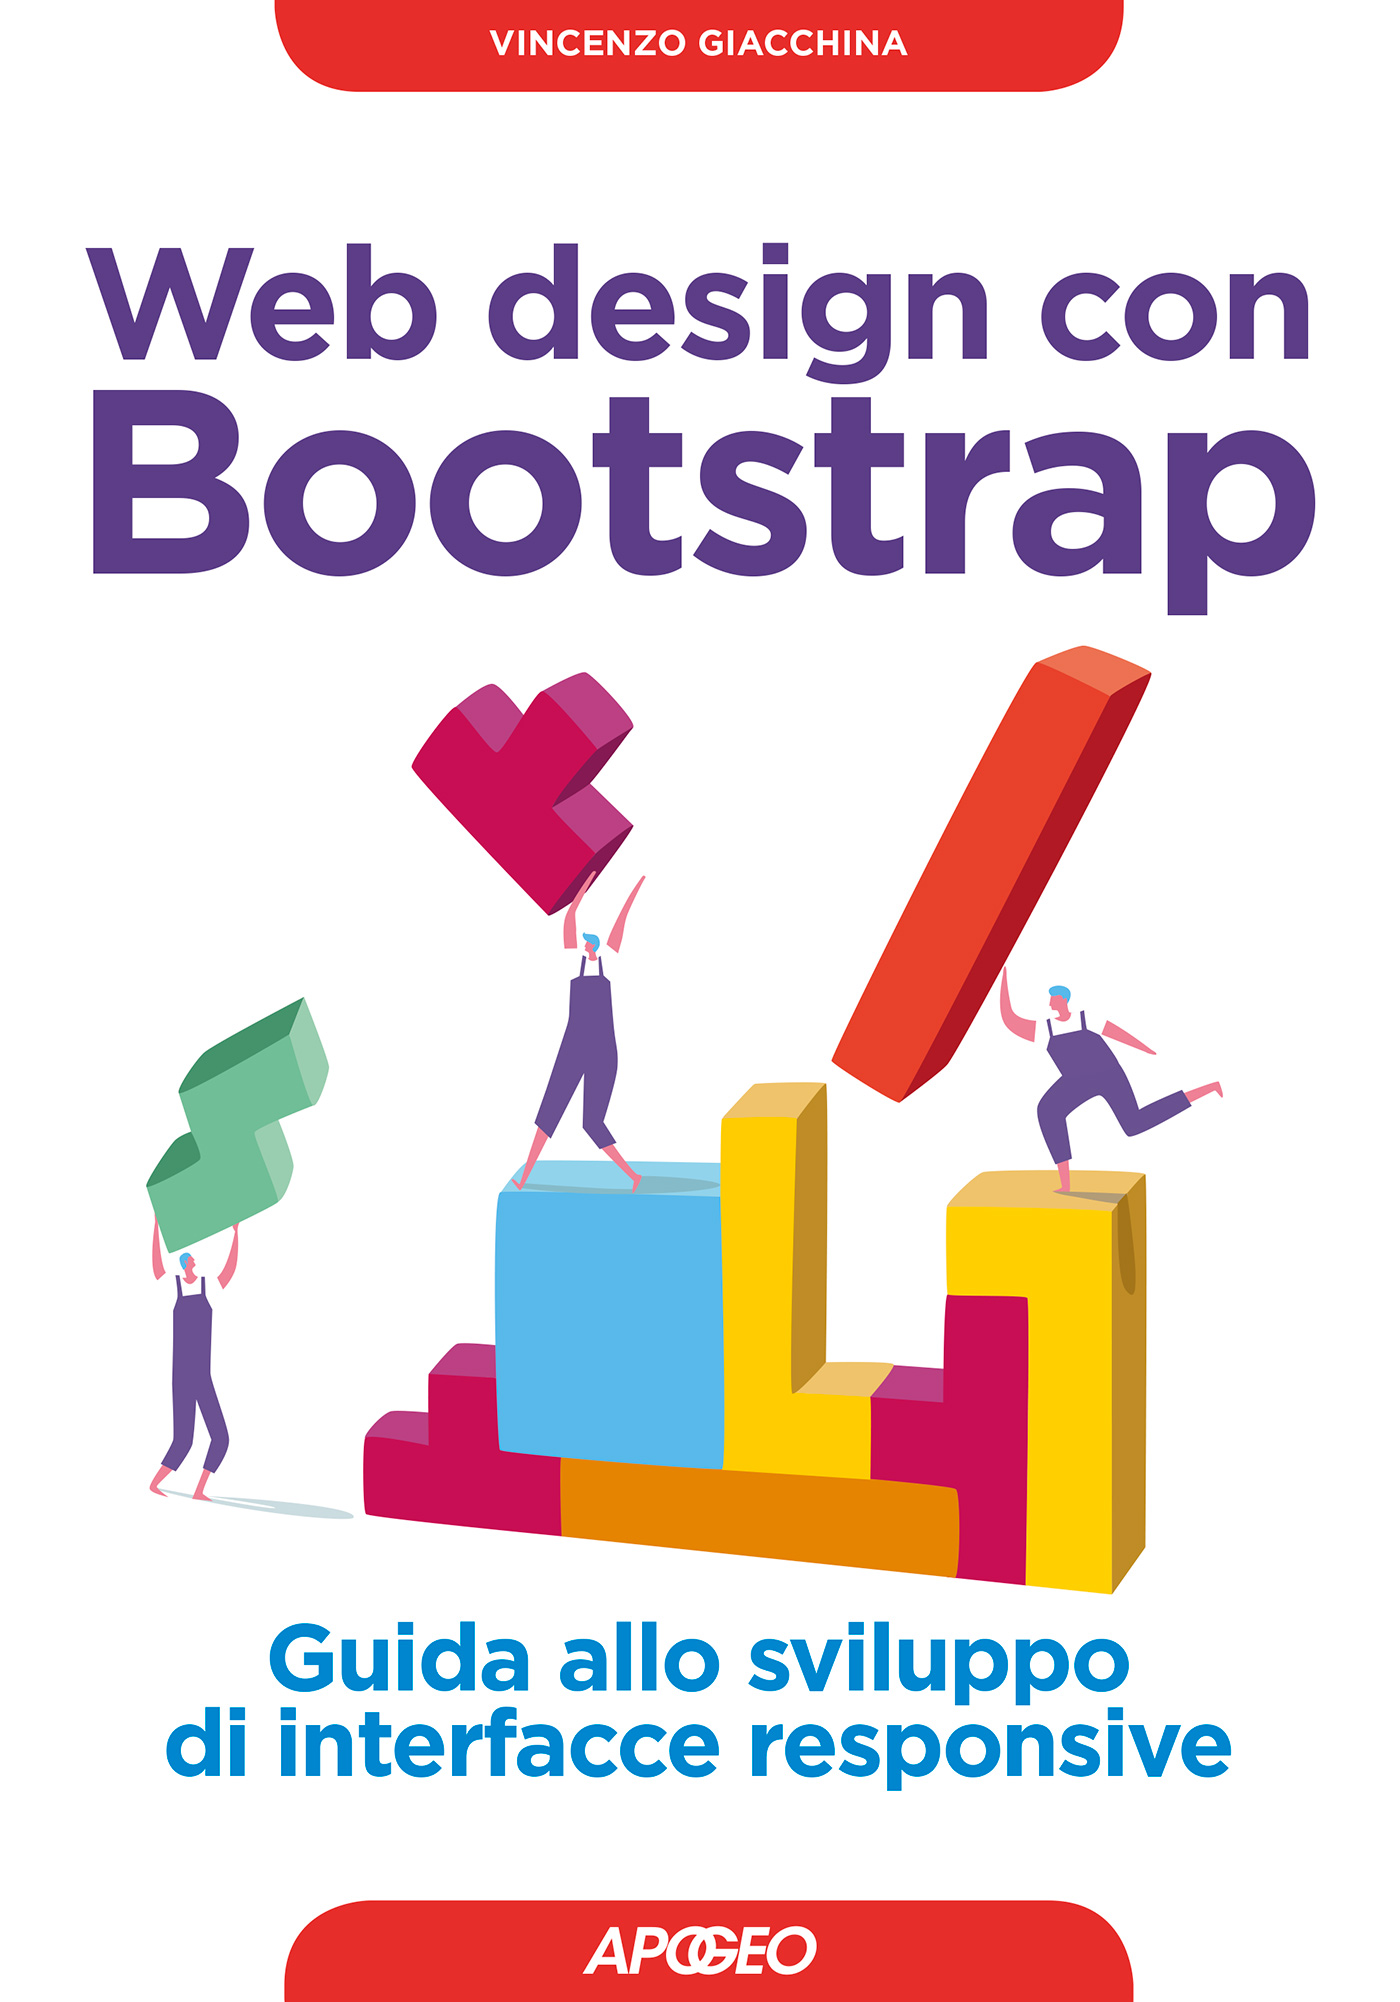 Web design con Bootstrap